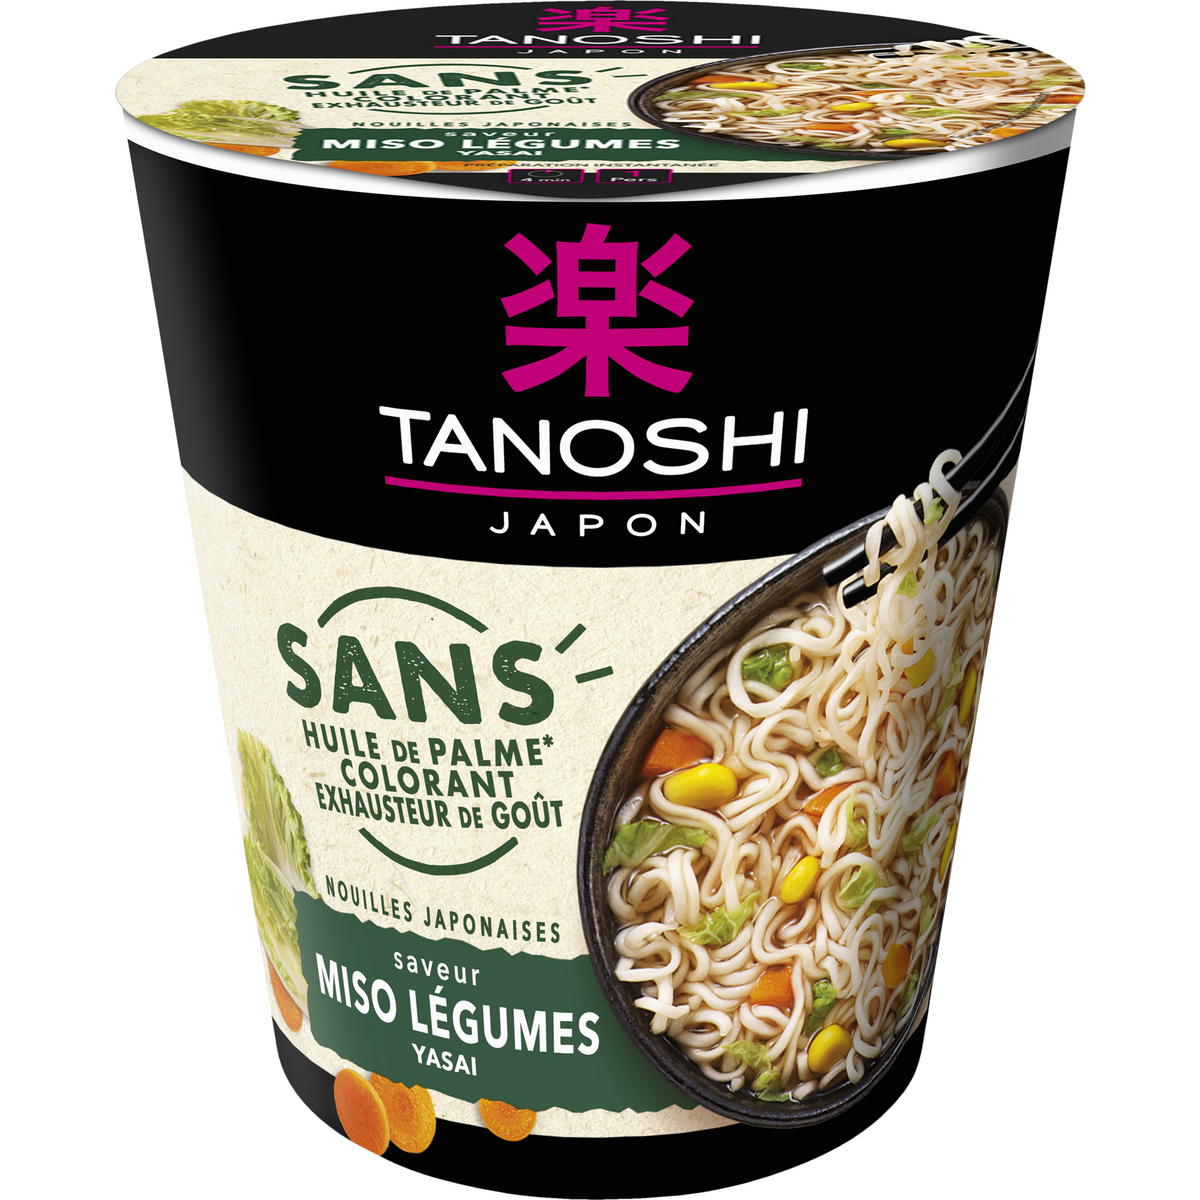 TANOSHI Cup nouilles japonaises saveur miso légumes et yasai 1 personne 68g